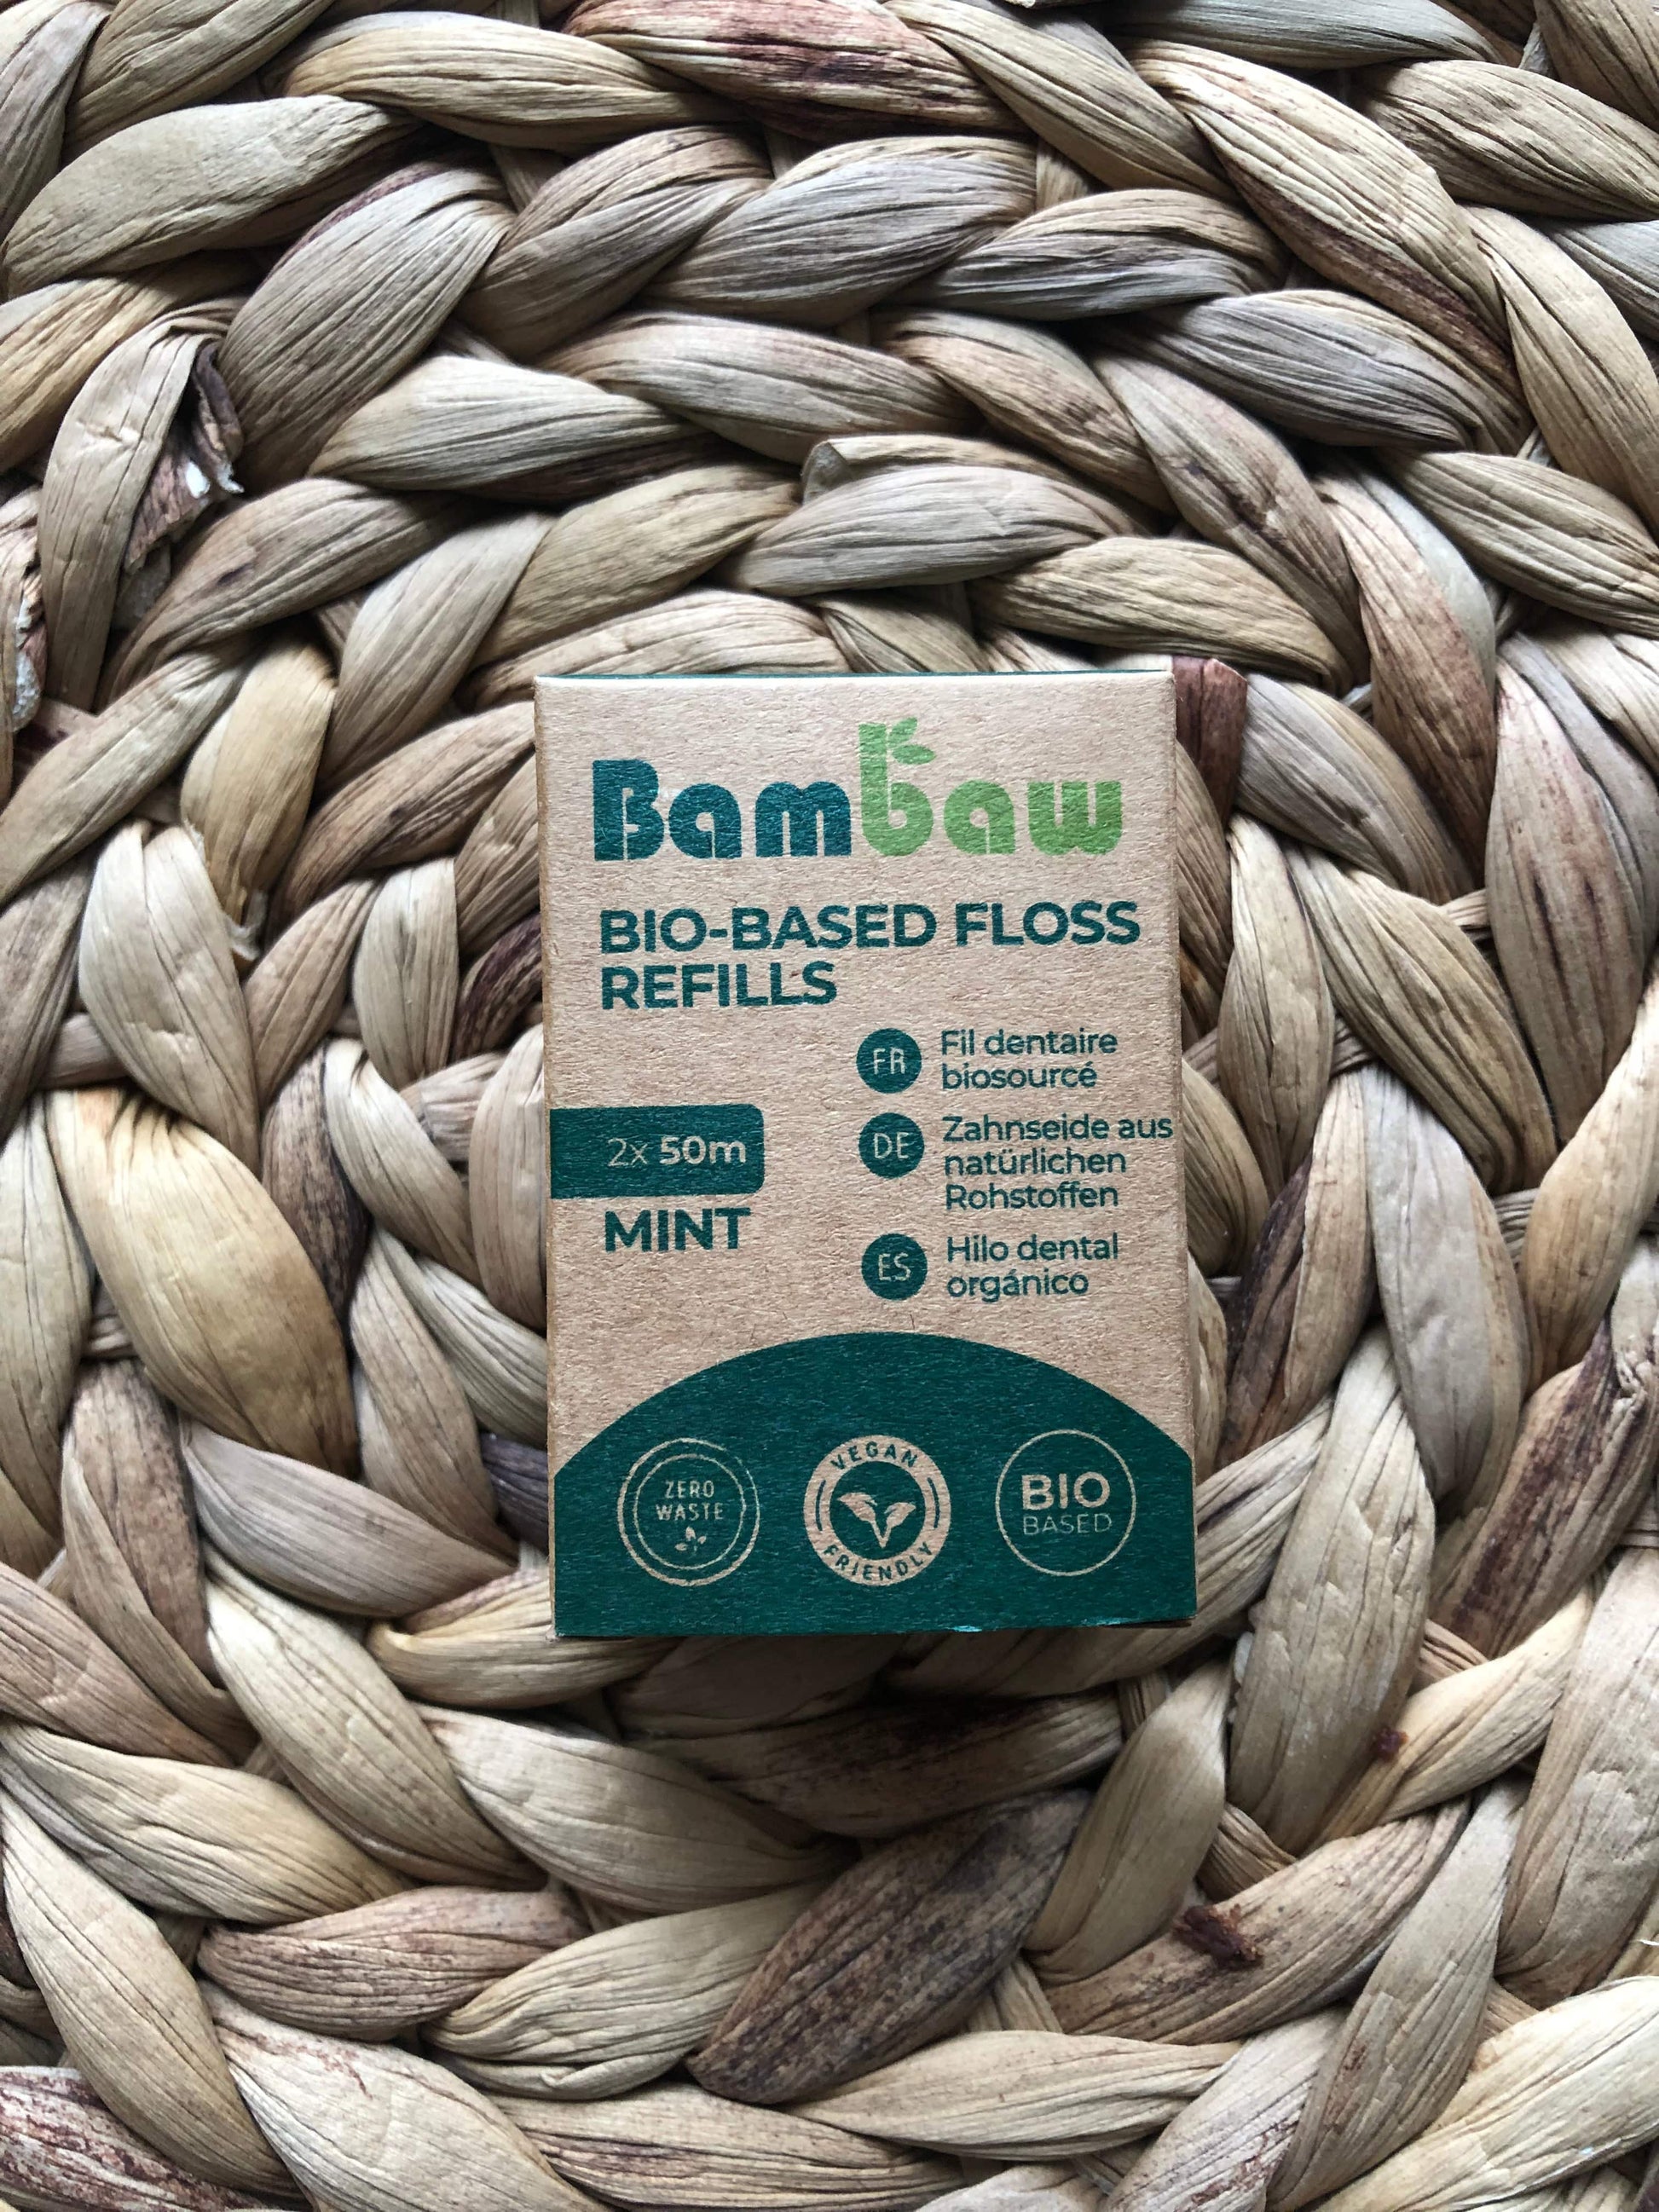 Bambaw Refill 2 pack (no dispenser ) Bambaw Vegan Bio-based Floss in reusable metal dispenser